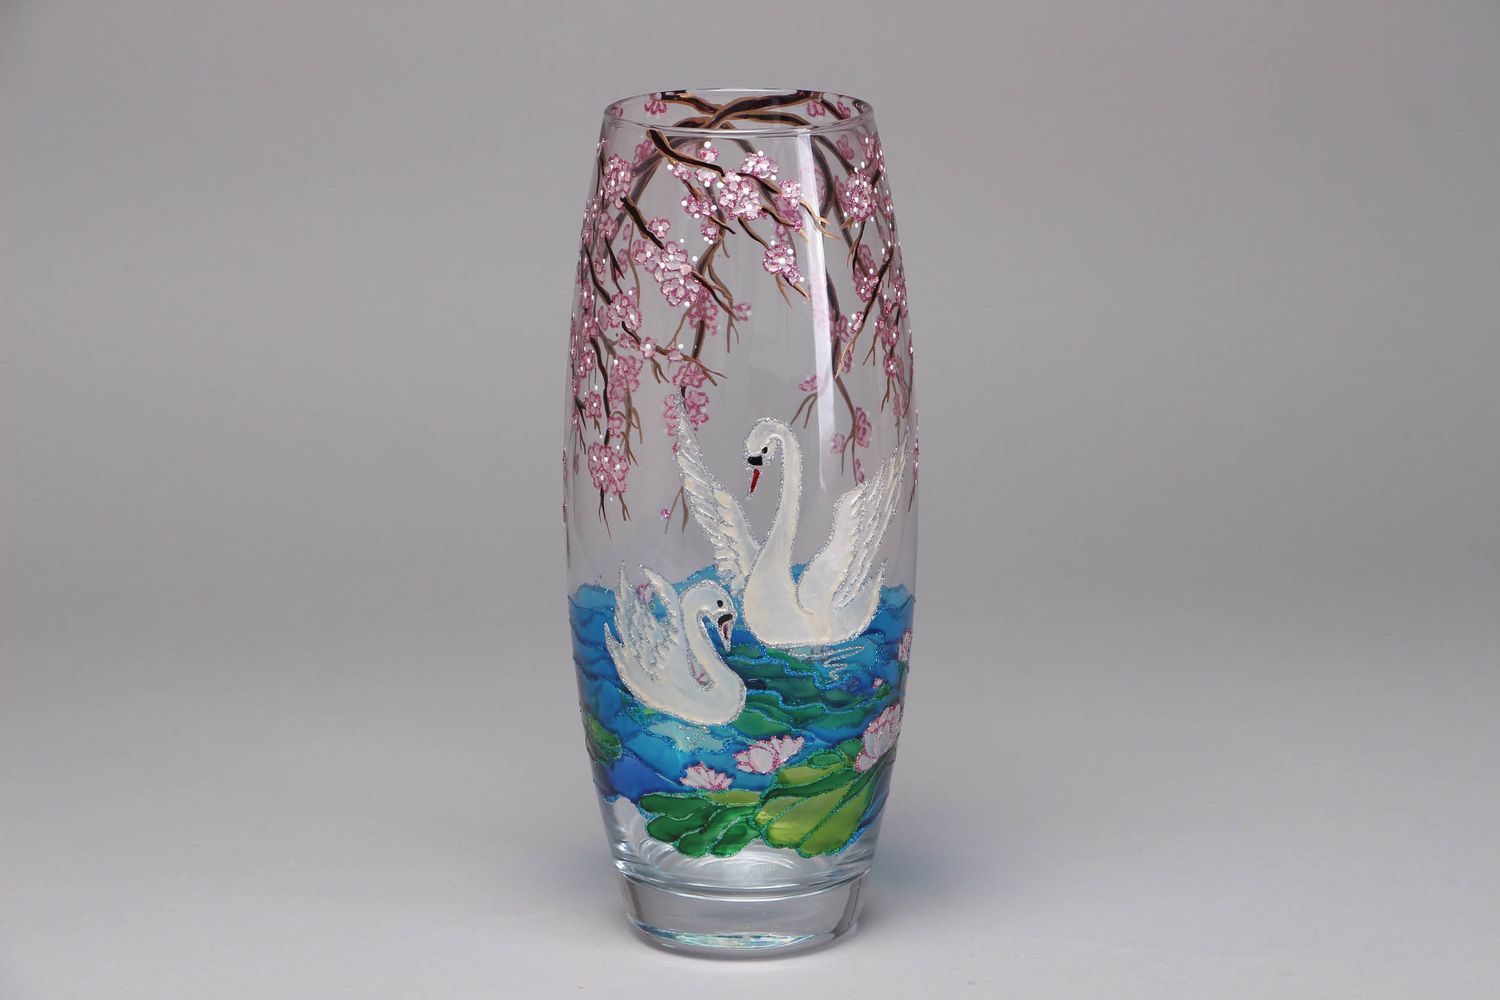 Florero de cristal para flores pintado con tintes vitrales de capacidad de 1,5 litros foto 1